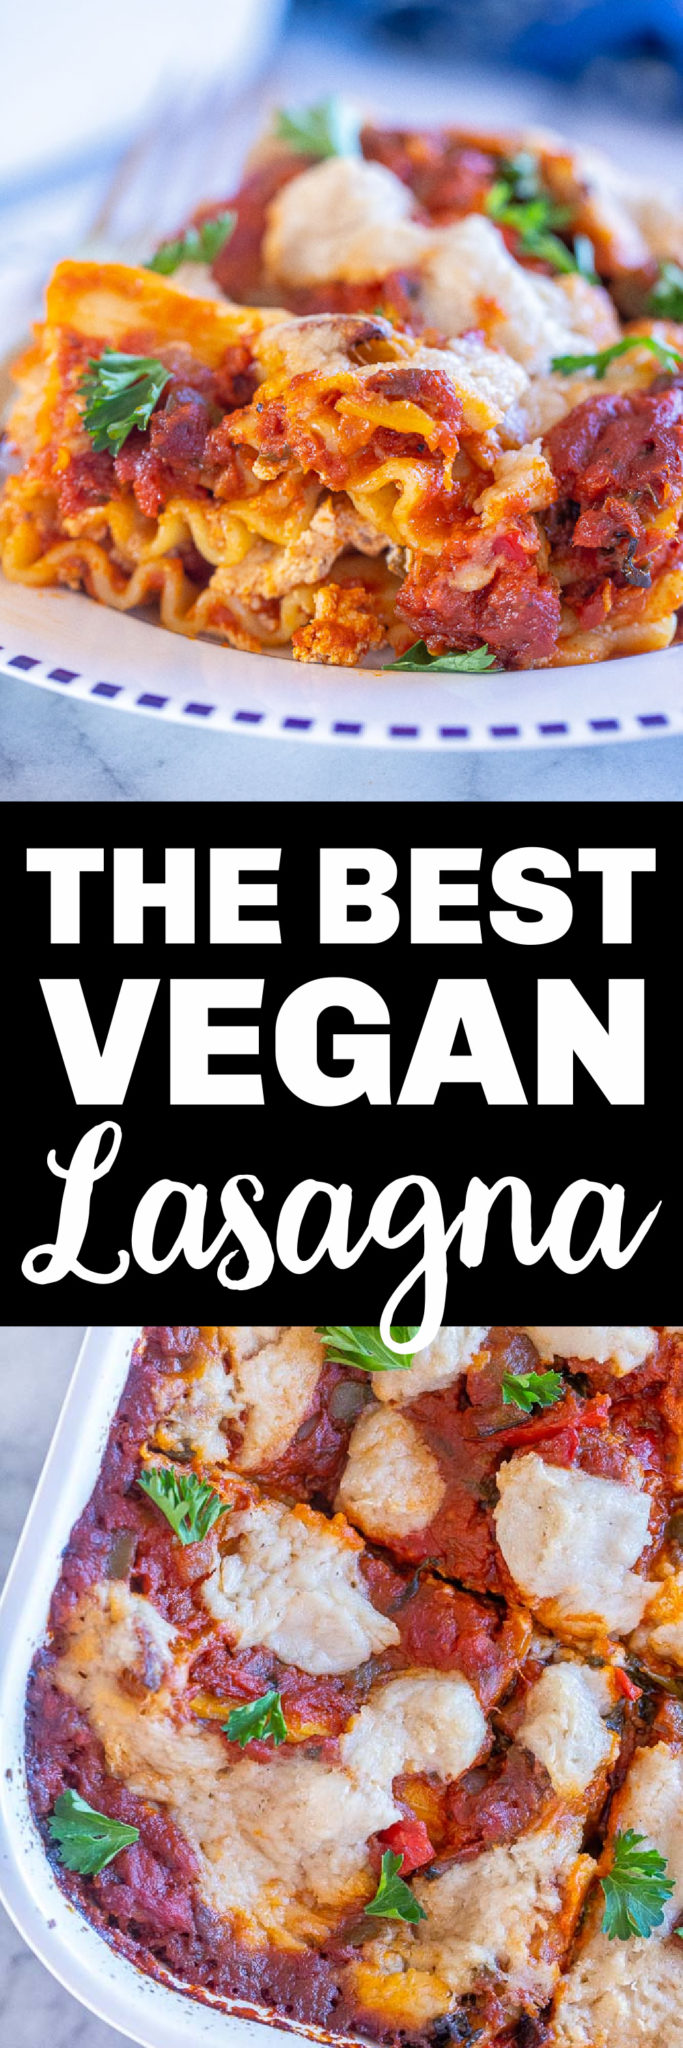 Vegan Lasagna Recipe - She Likes Food